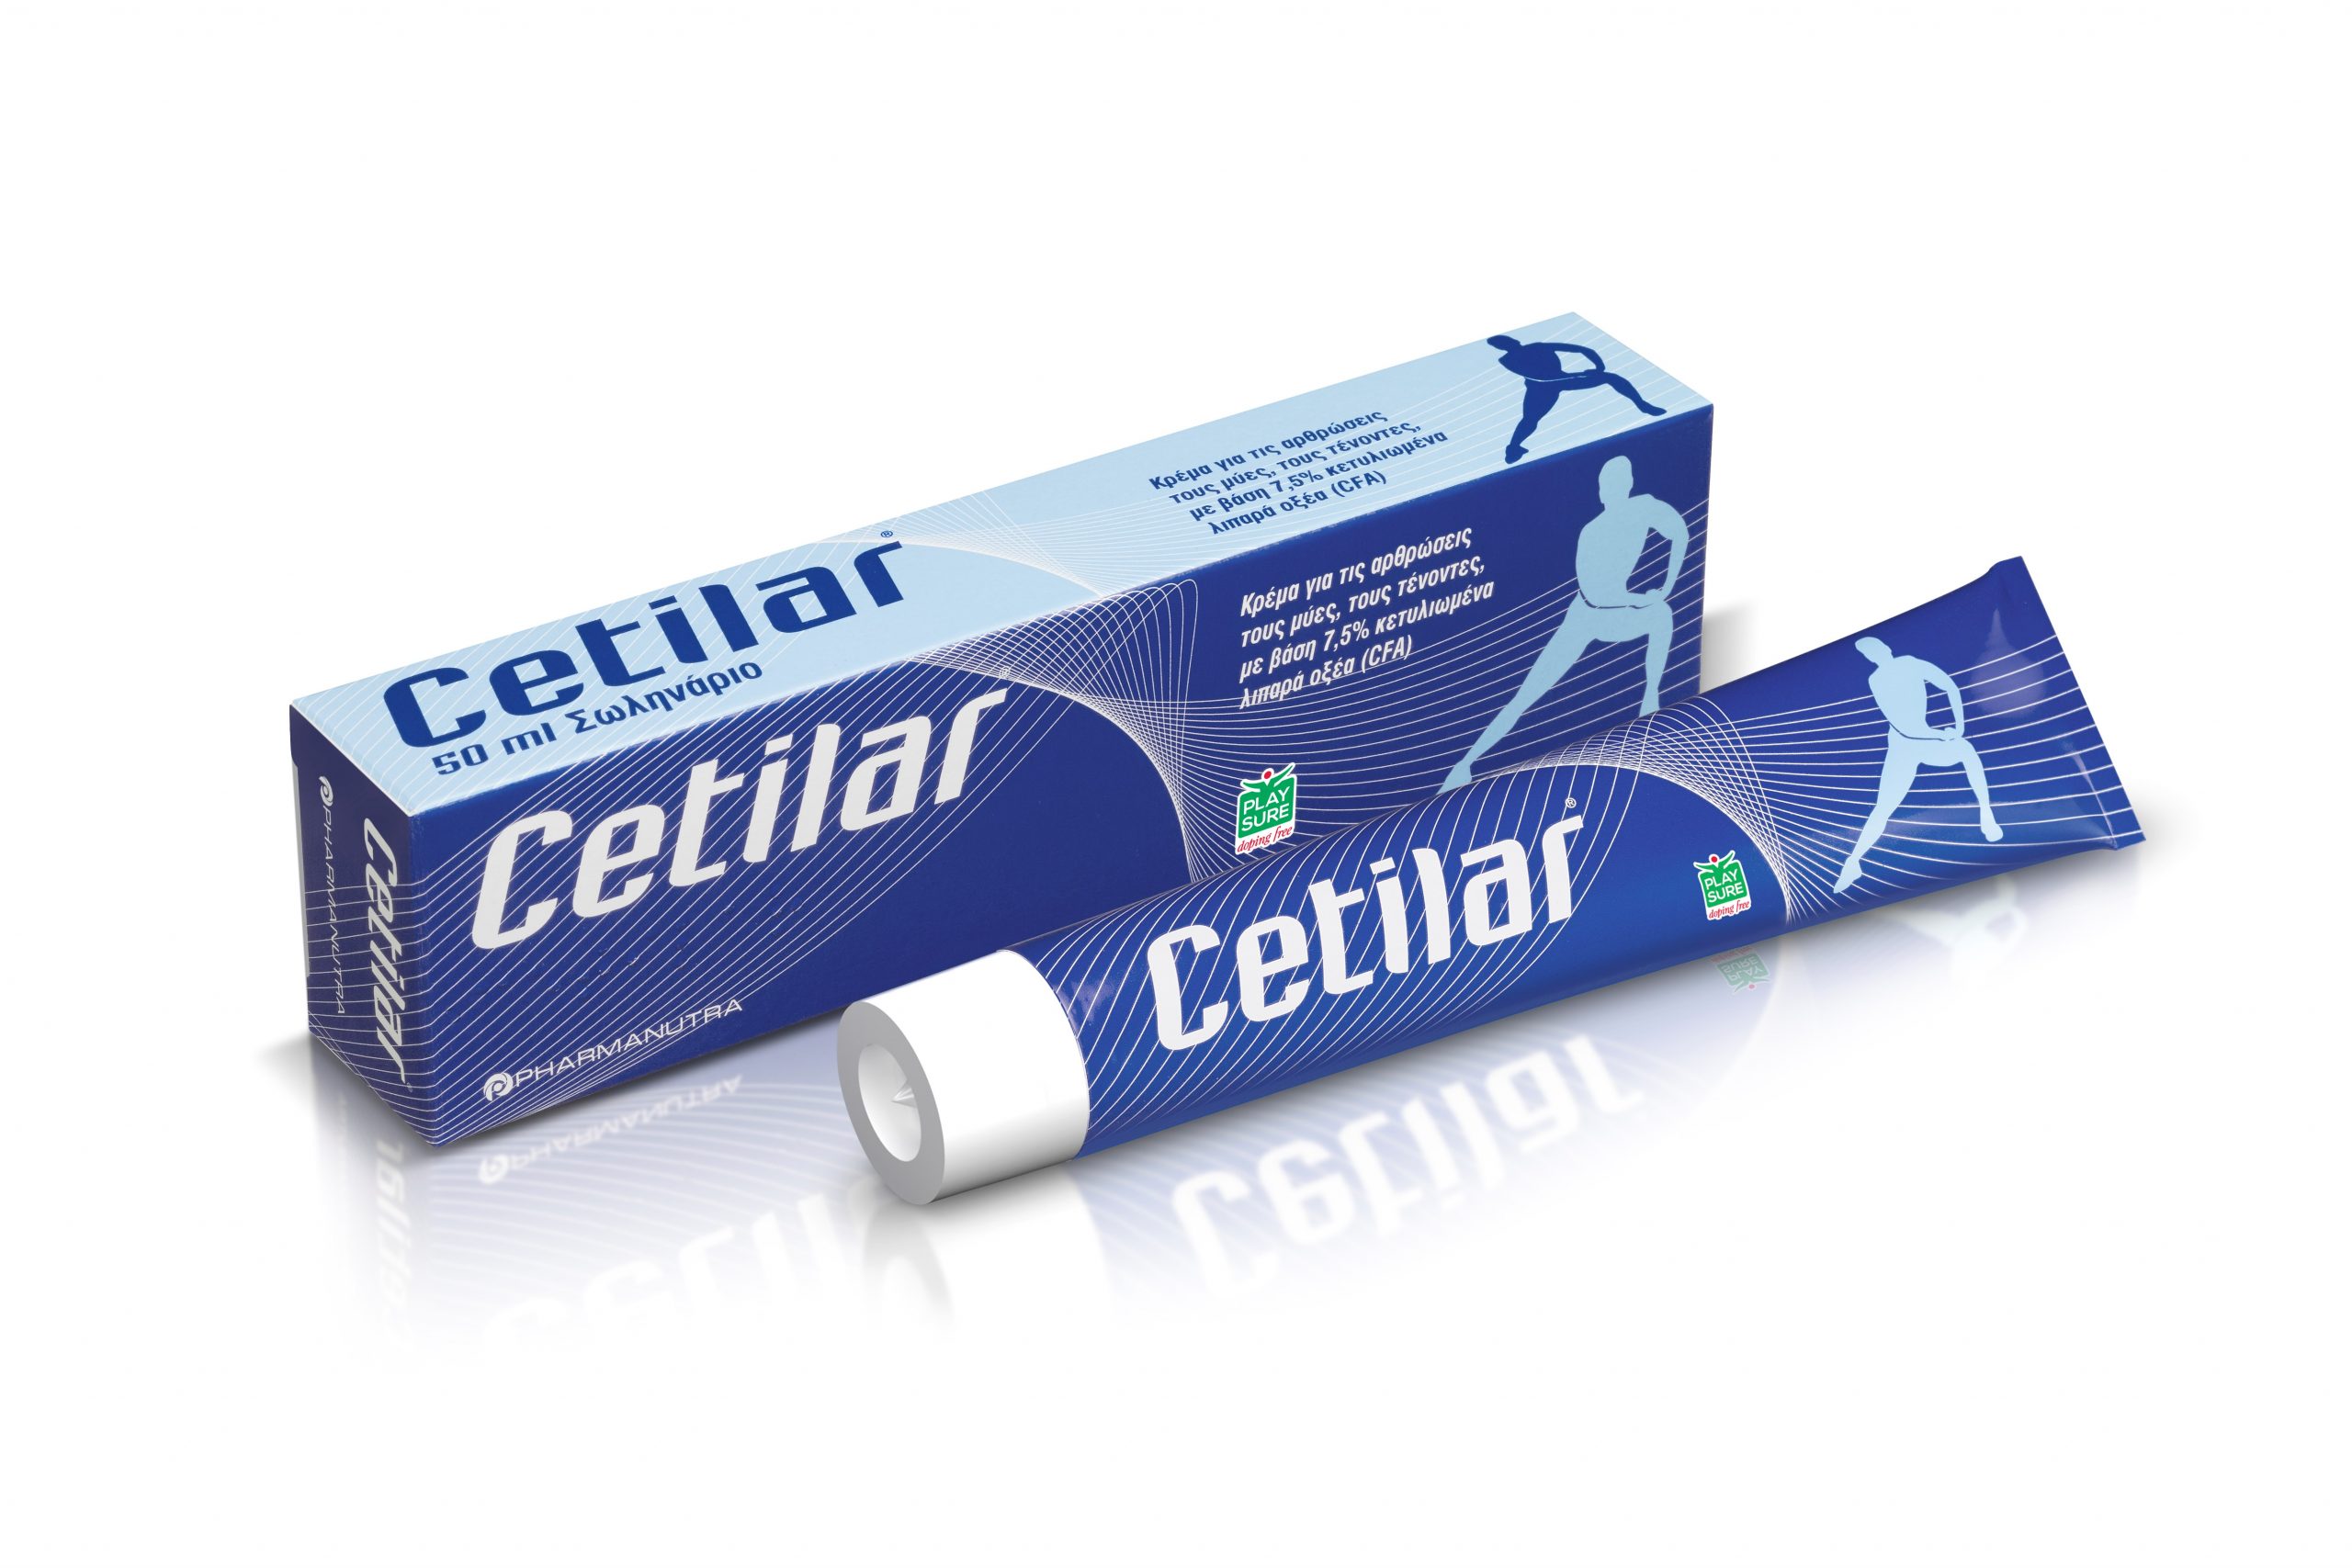 Cetilar: κρέμα με κετυλιωμένα λιπαρά οξέα φυτικής προέλευσης για την αντιμετώπιση του πόνου σε μυς αρθρώσεις και τένοντες